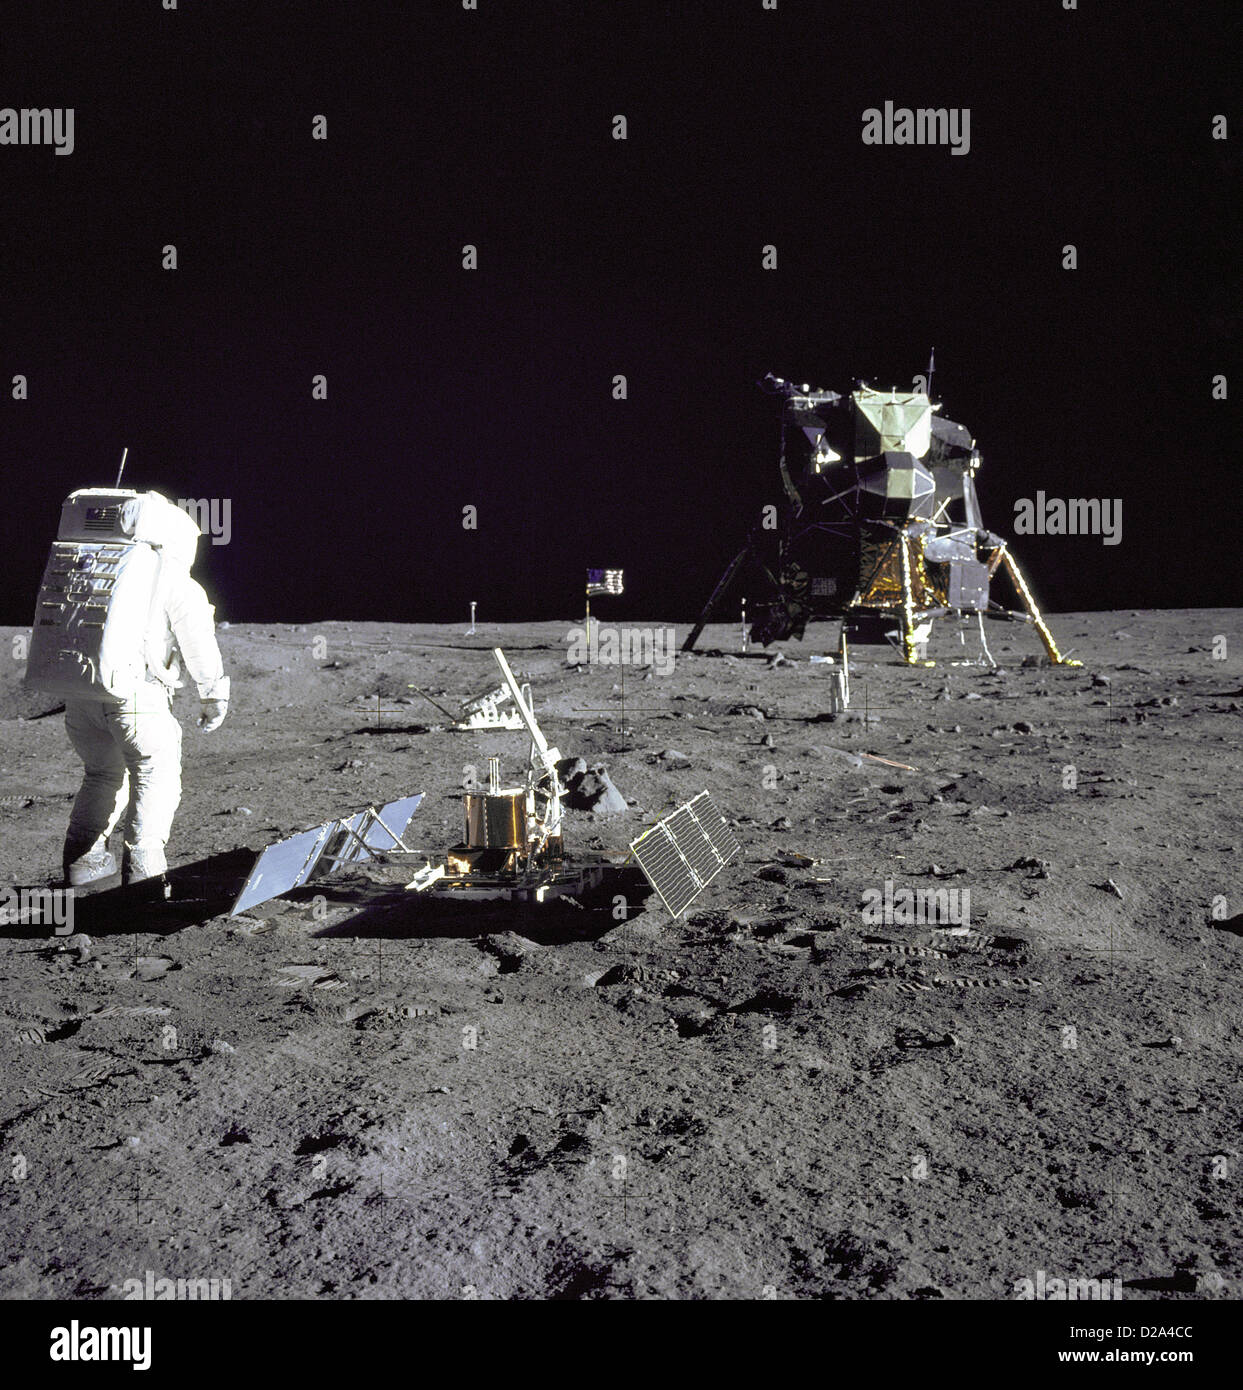 El astronauta Edwin E. "Buzz" Aldrin Jr., piloto del Módulo Lunar es fotografiado durante la actividad extravehicular Apolo 11 sobre la Luna ha Foto de stock